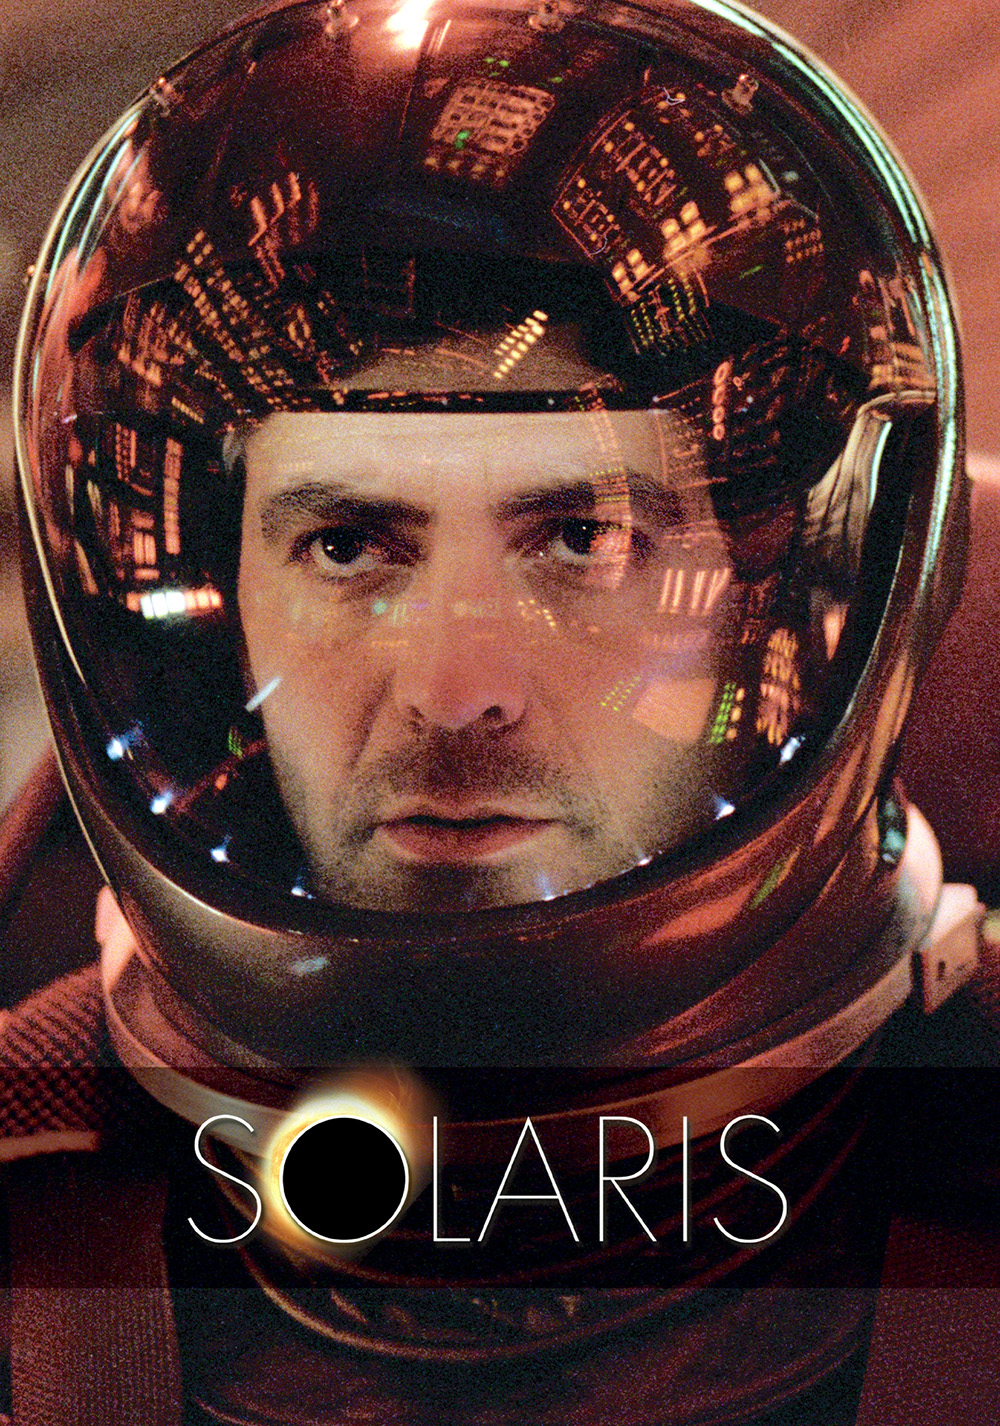 Solaris Art